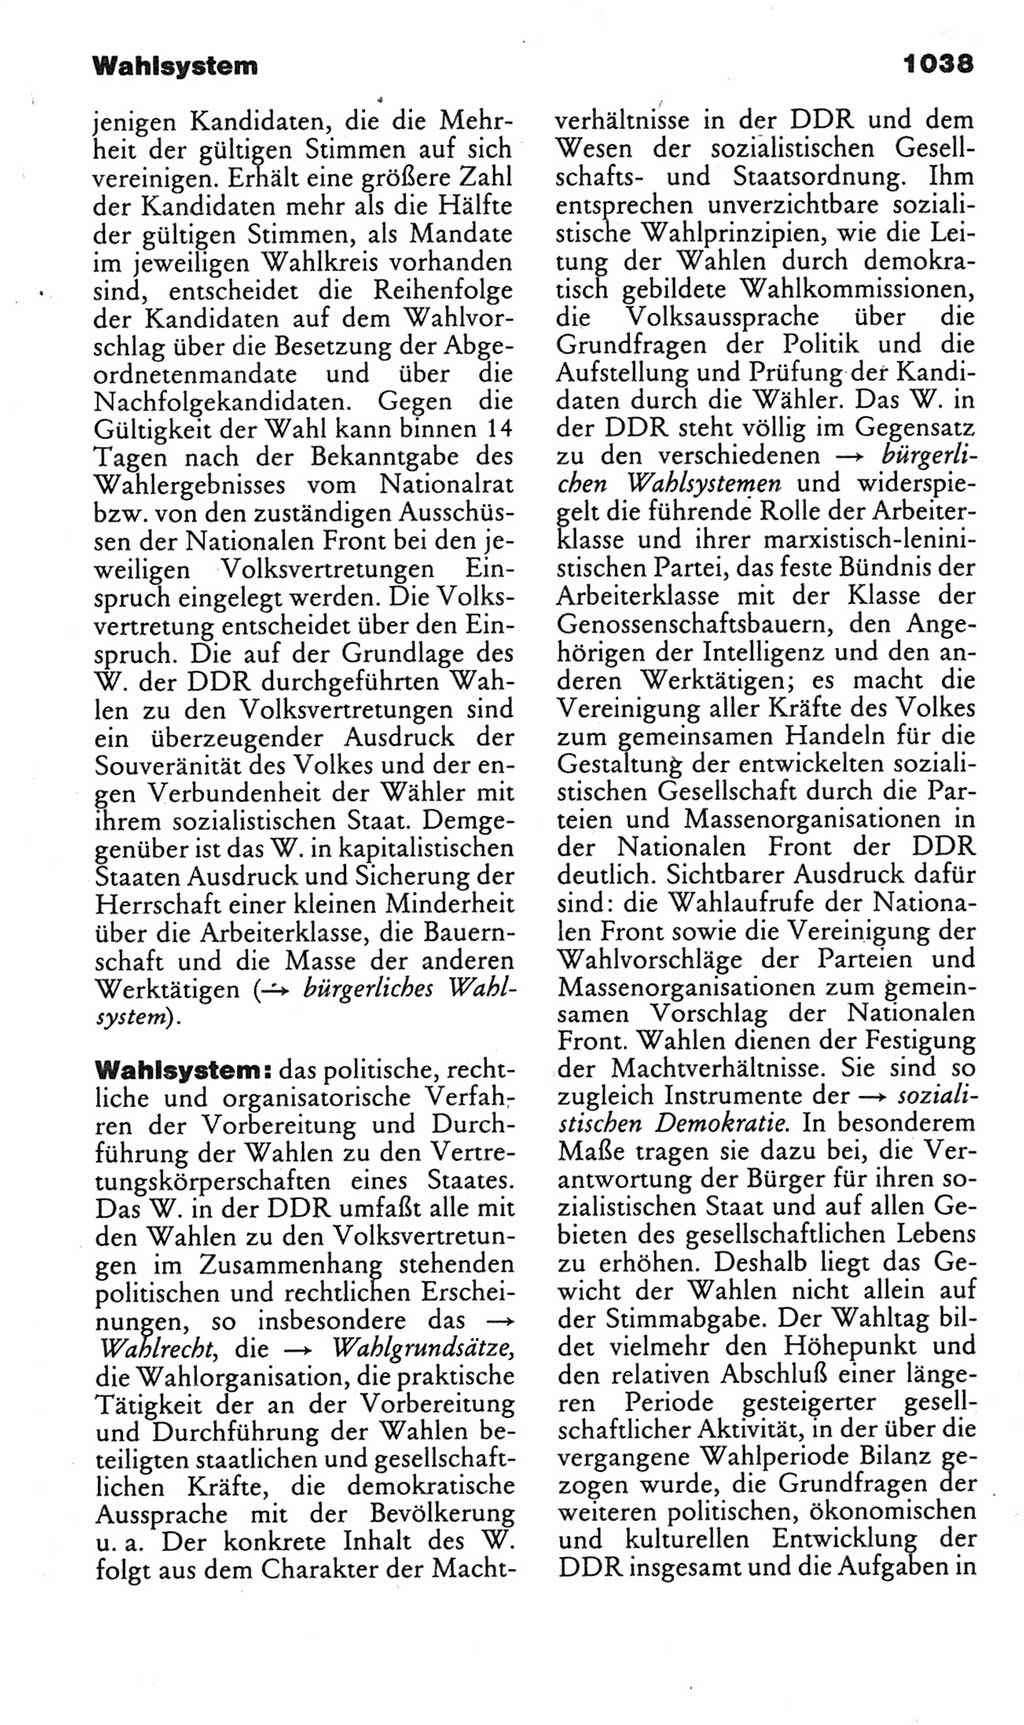 Kleines politisches Wörterbuch [Deutsche Demokratische Republik (DDR)] 1985, Seite 1038 (Kl. pol. Wb. DDR 1985, S. 1038)